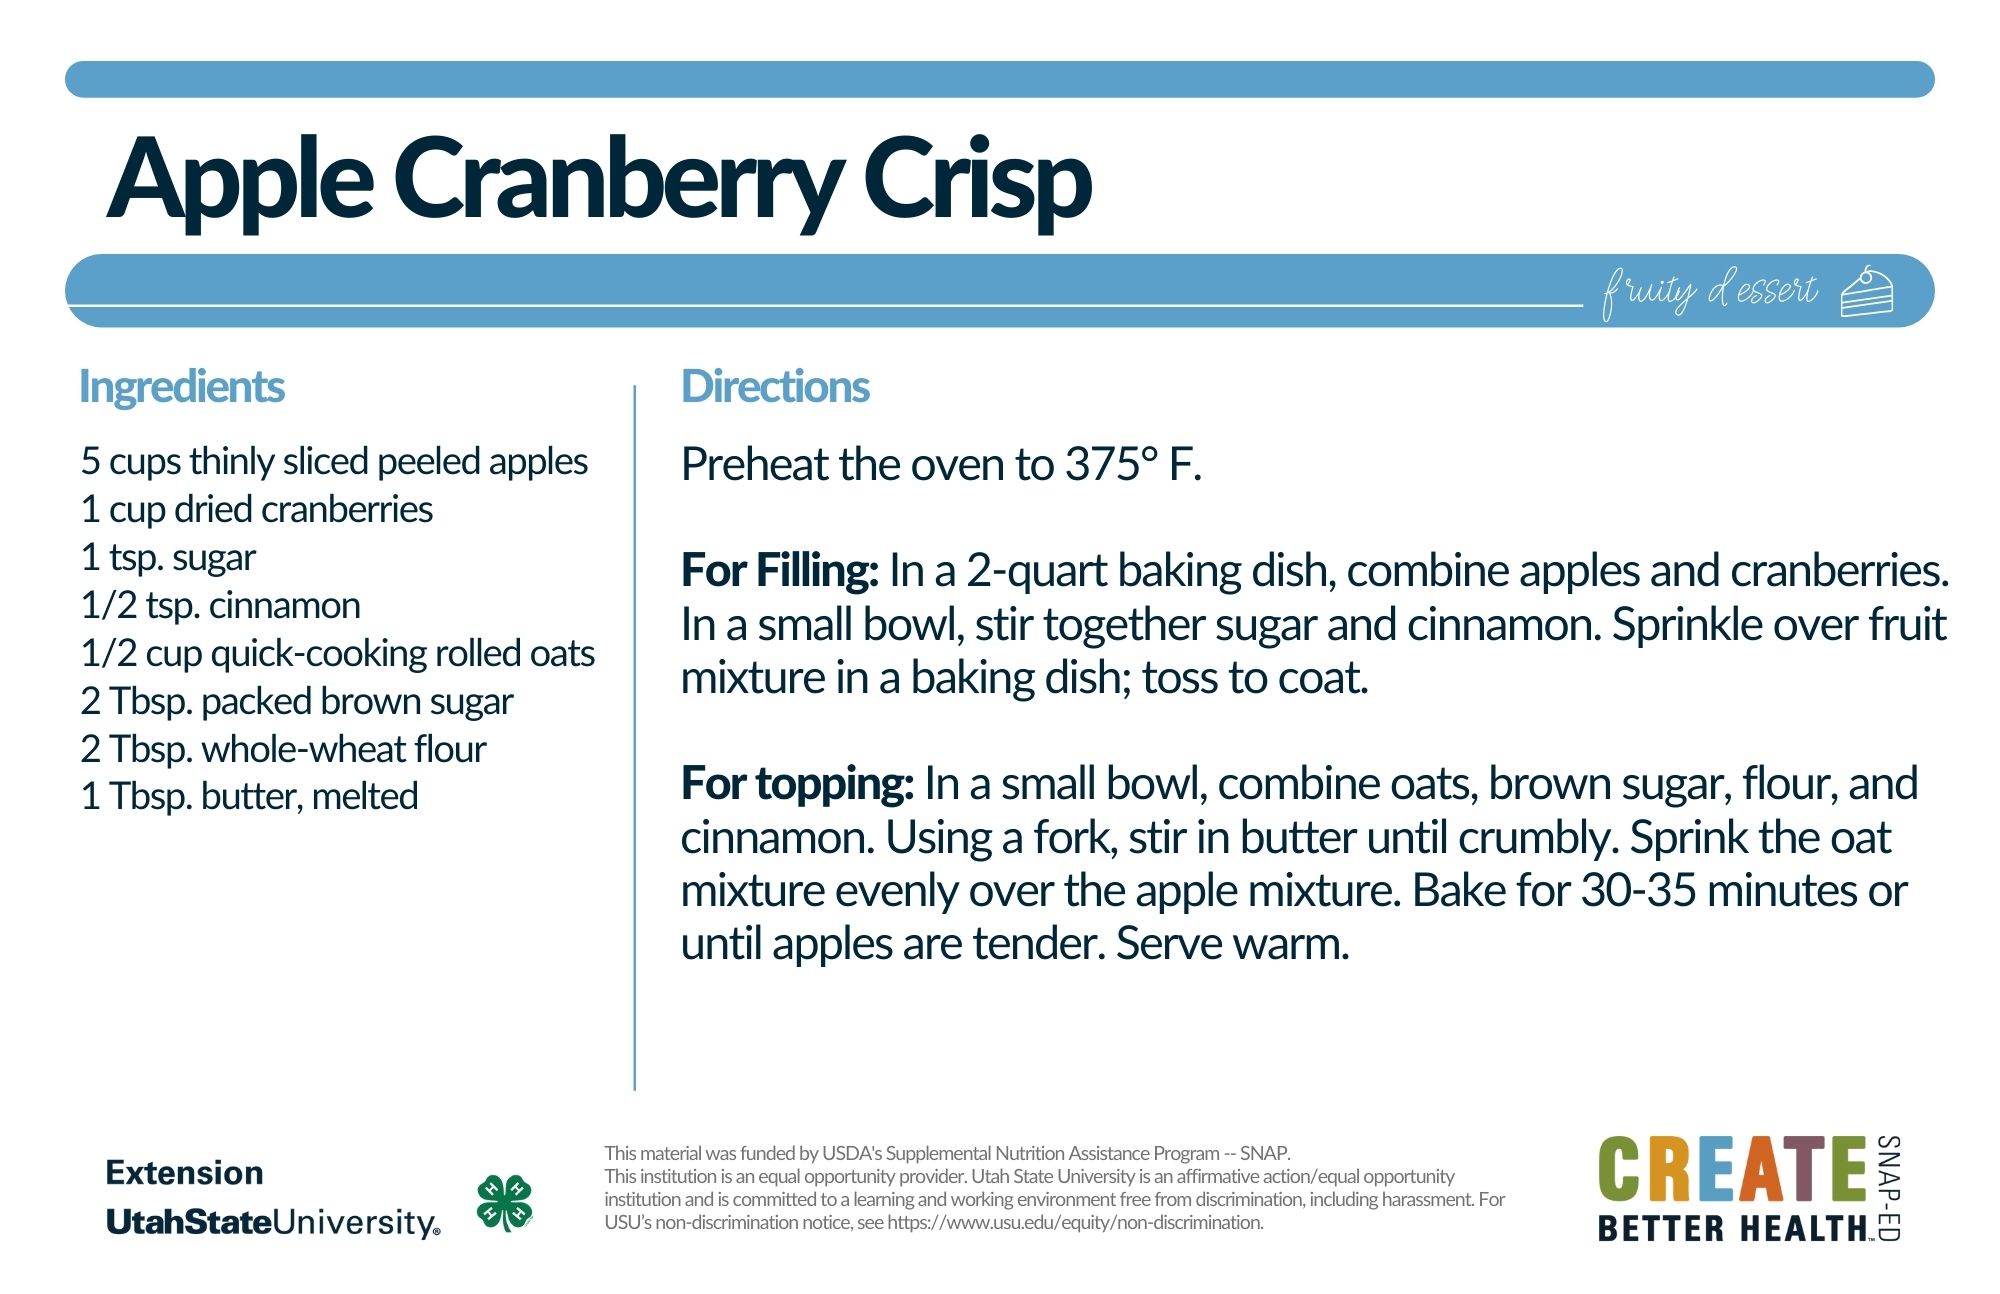 apple cranberry crisp recipe card 